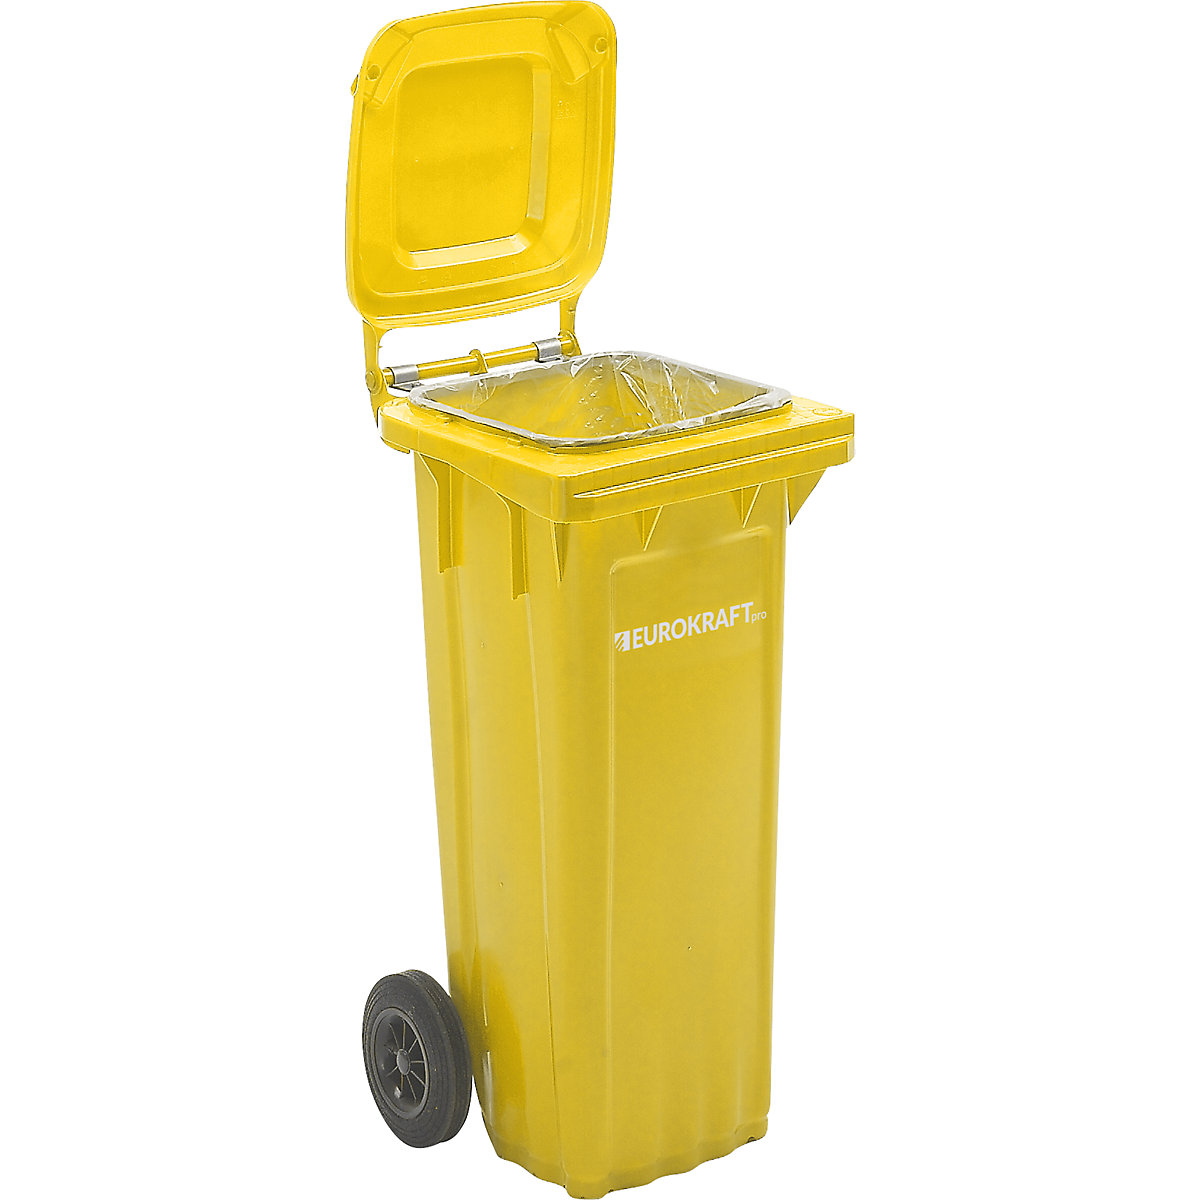 Contentor de lixo em plástico DIN EN 840 – eurokraft pro, volume 80 l, LxAxP 448 x 932 x 514 mm, amarelo, a partir de 5 unid.-12